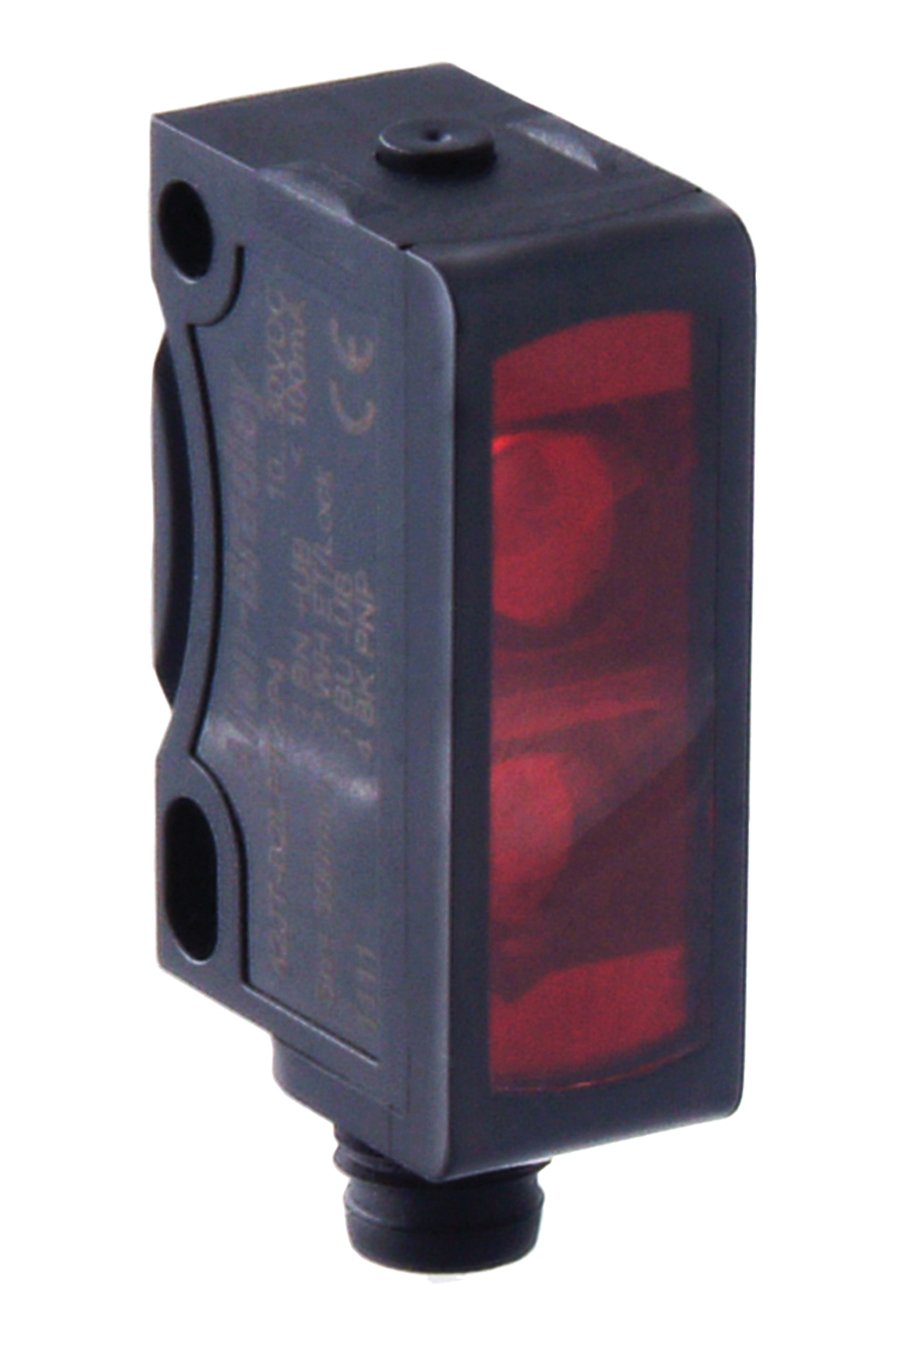 黑色 Allen-Bradley 矩形传感器，附带面向右侧的红色镜头。